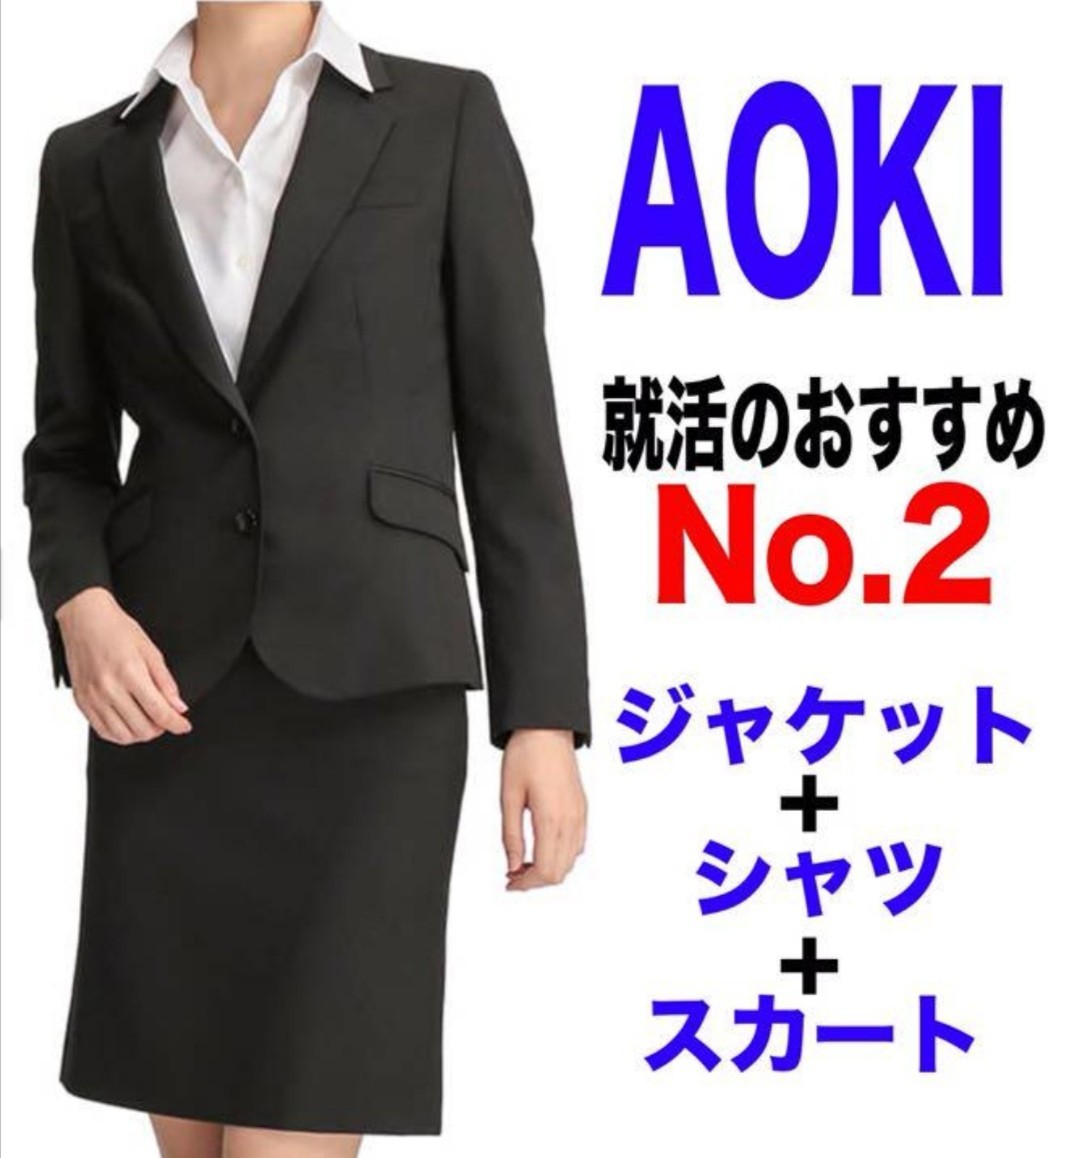 日本製・綿100% 【即日発送】AOKI リクルートスーツ黒3点